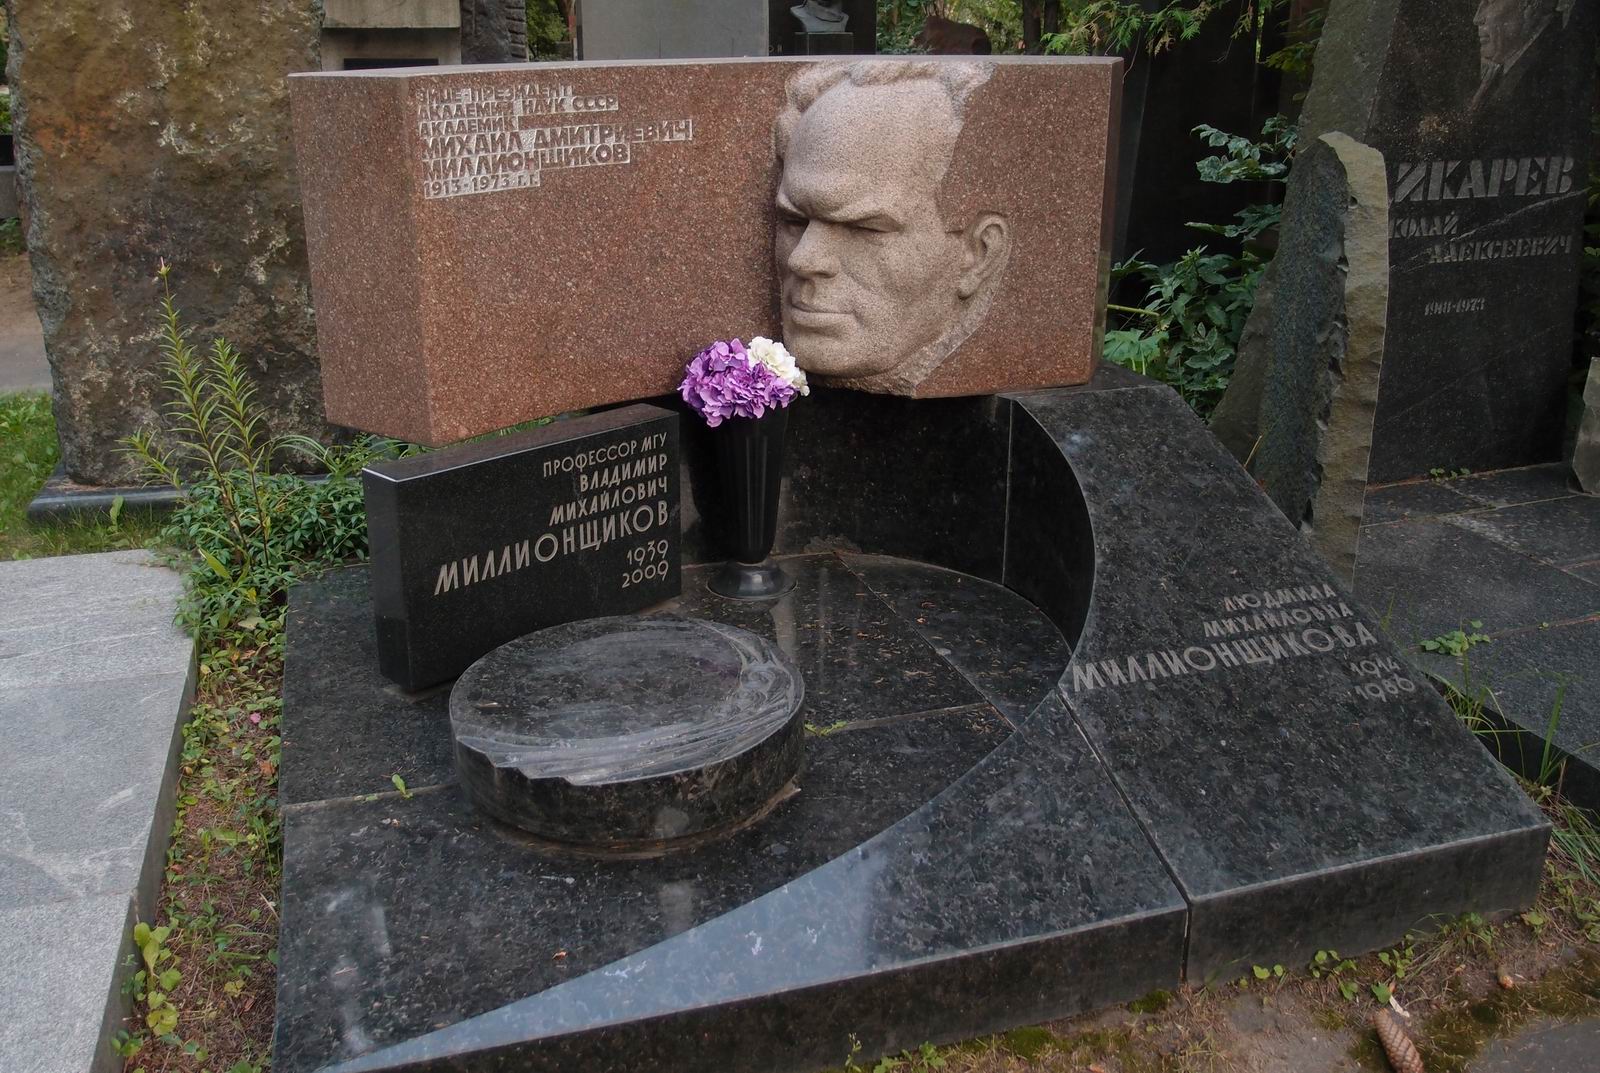 Памятник на могиле Миллионщикова М.Д. (1913–1973), ск. А.Постол, И.Постол, арх. А.Бурмистров, на Новодевичьем кладбище (7–4–13).